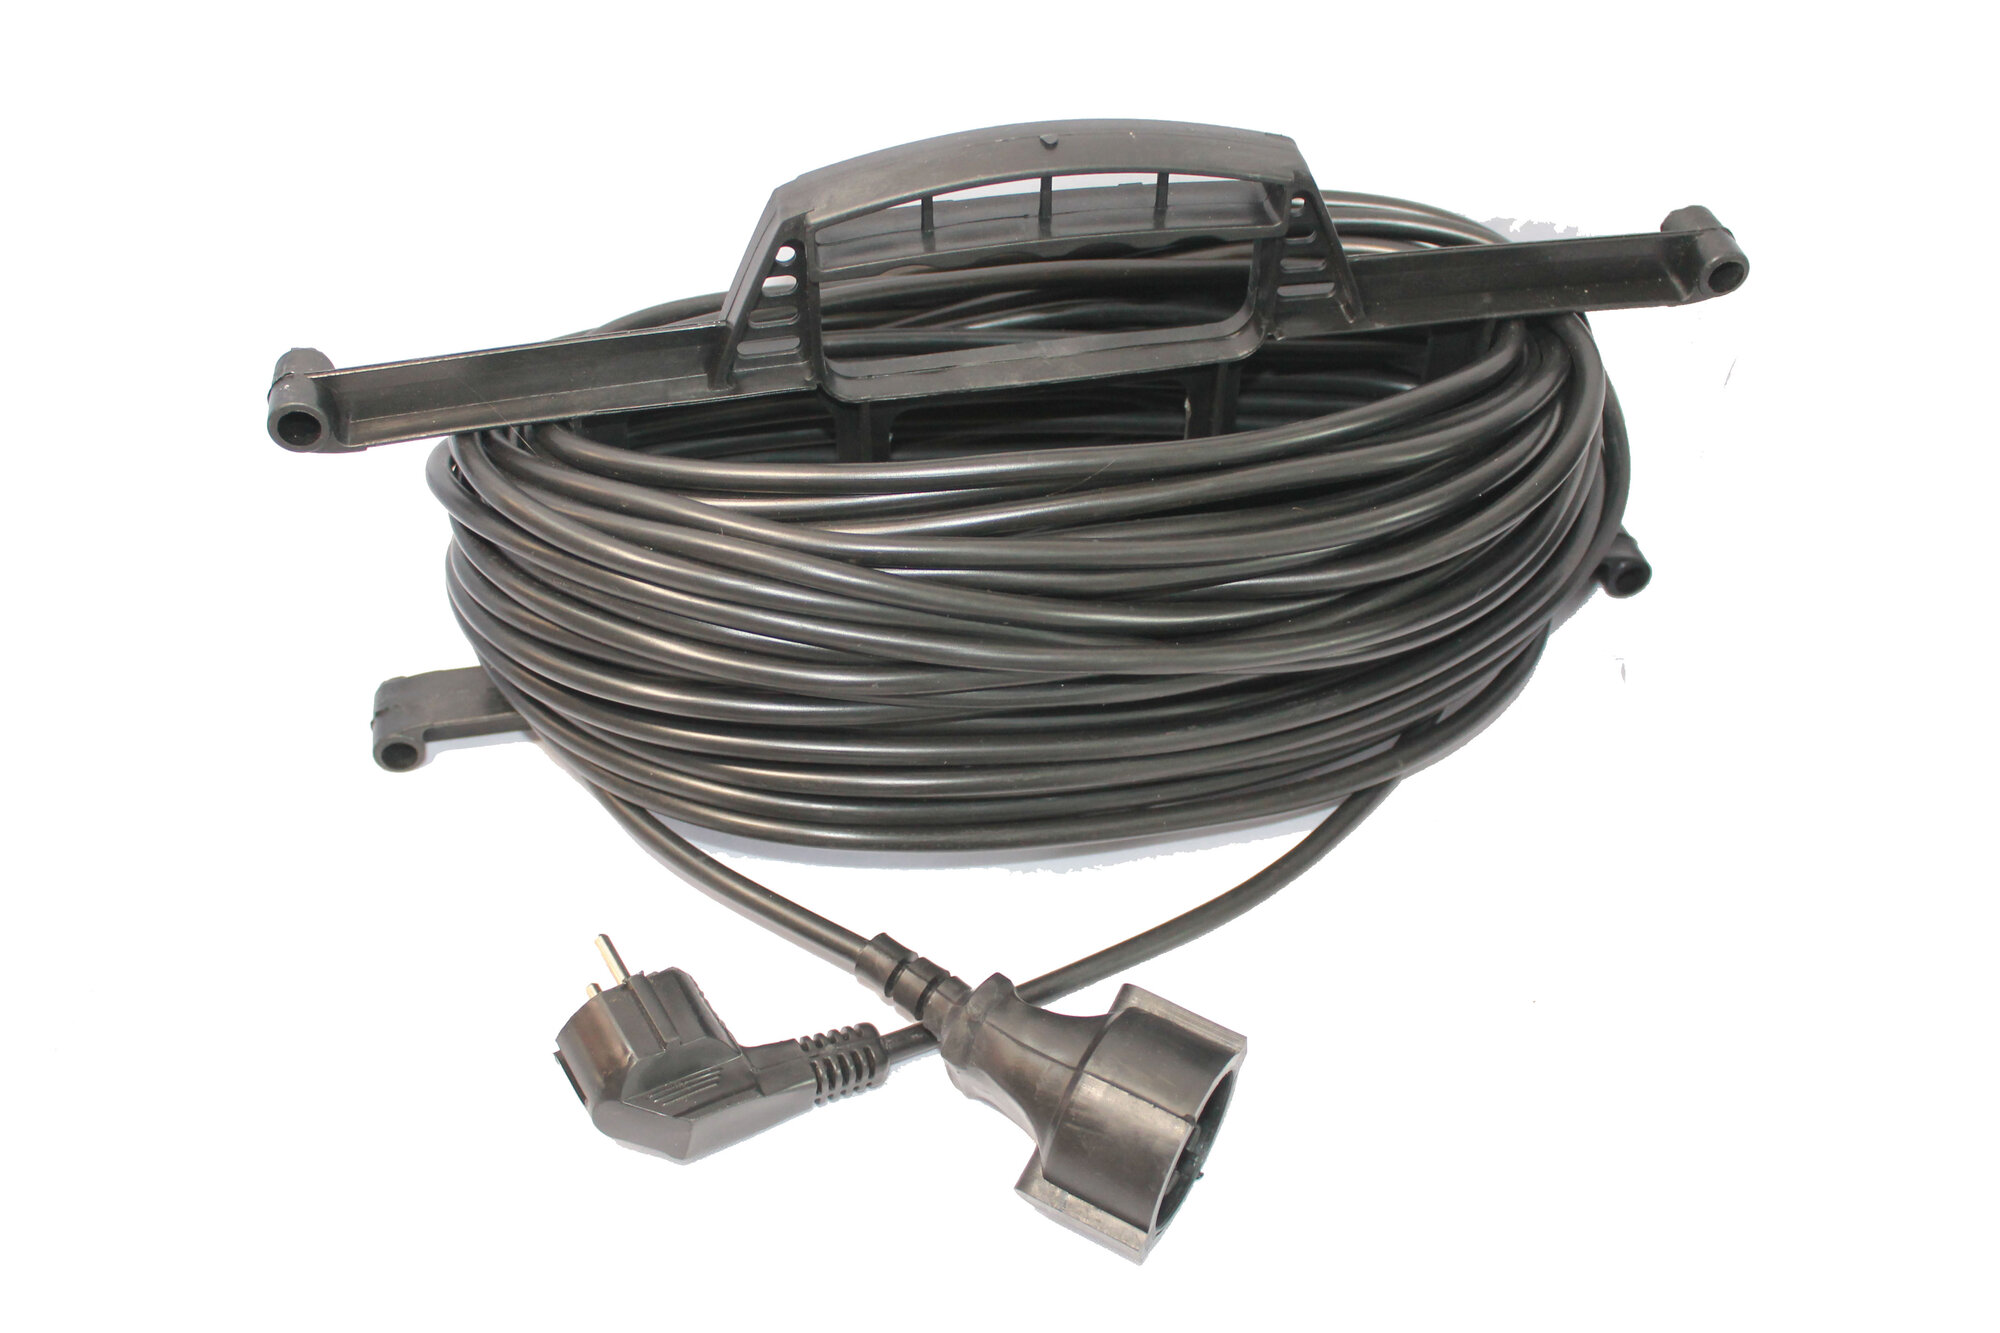 Удлинитель на рамке, длина 50м (кабель ПВС 2*1,5 ) 50 м, модель джетт 1 электрический, сетевой, садовый